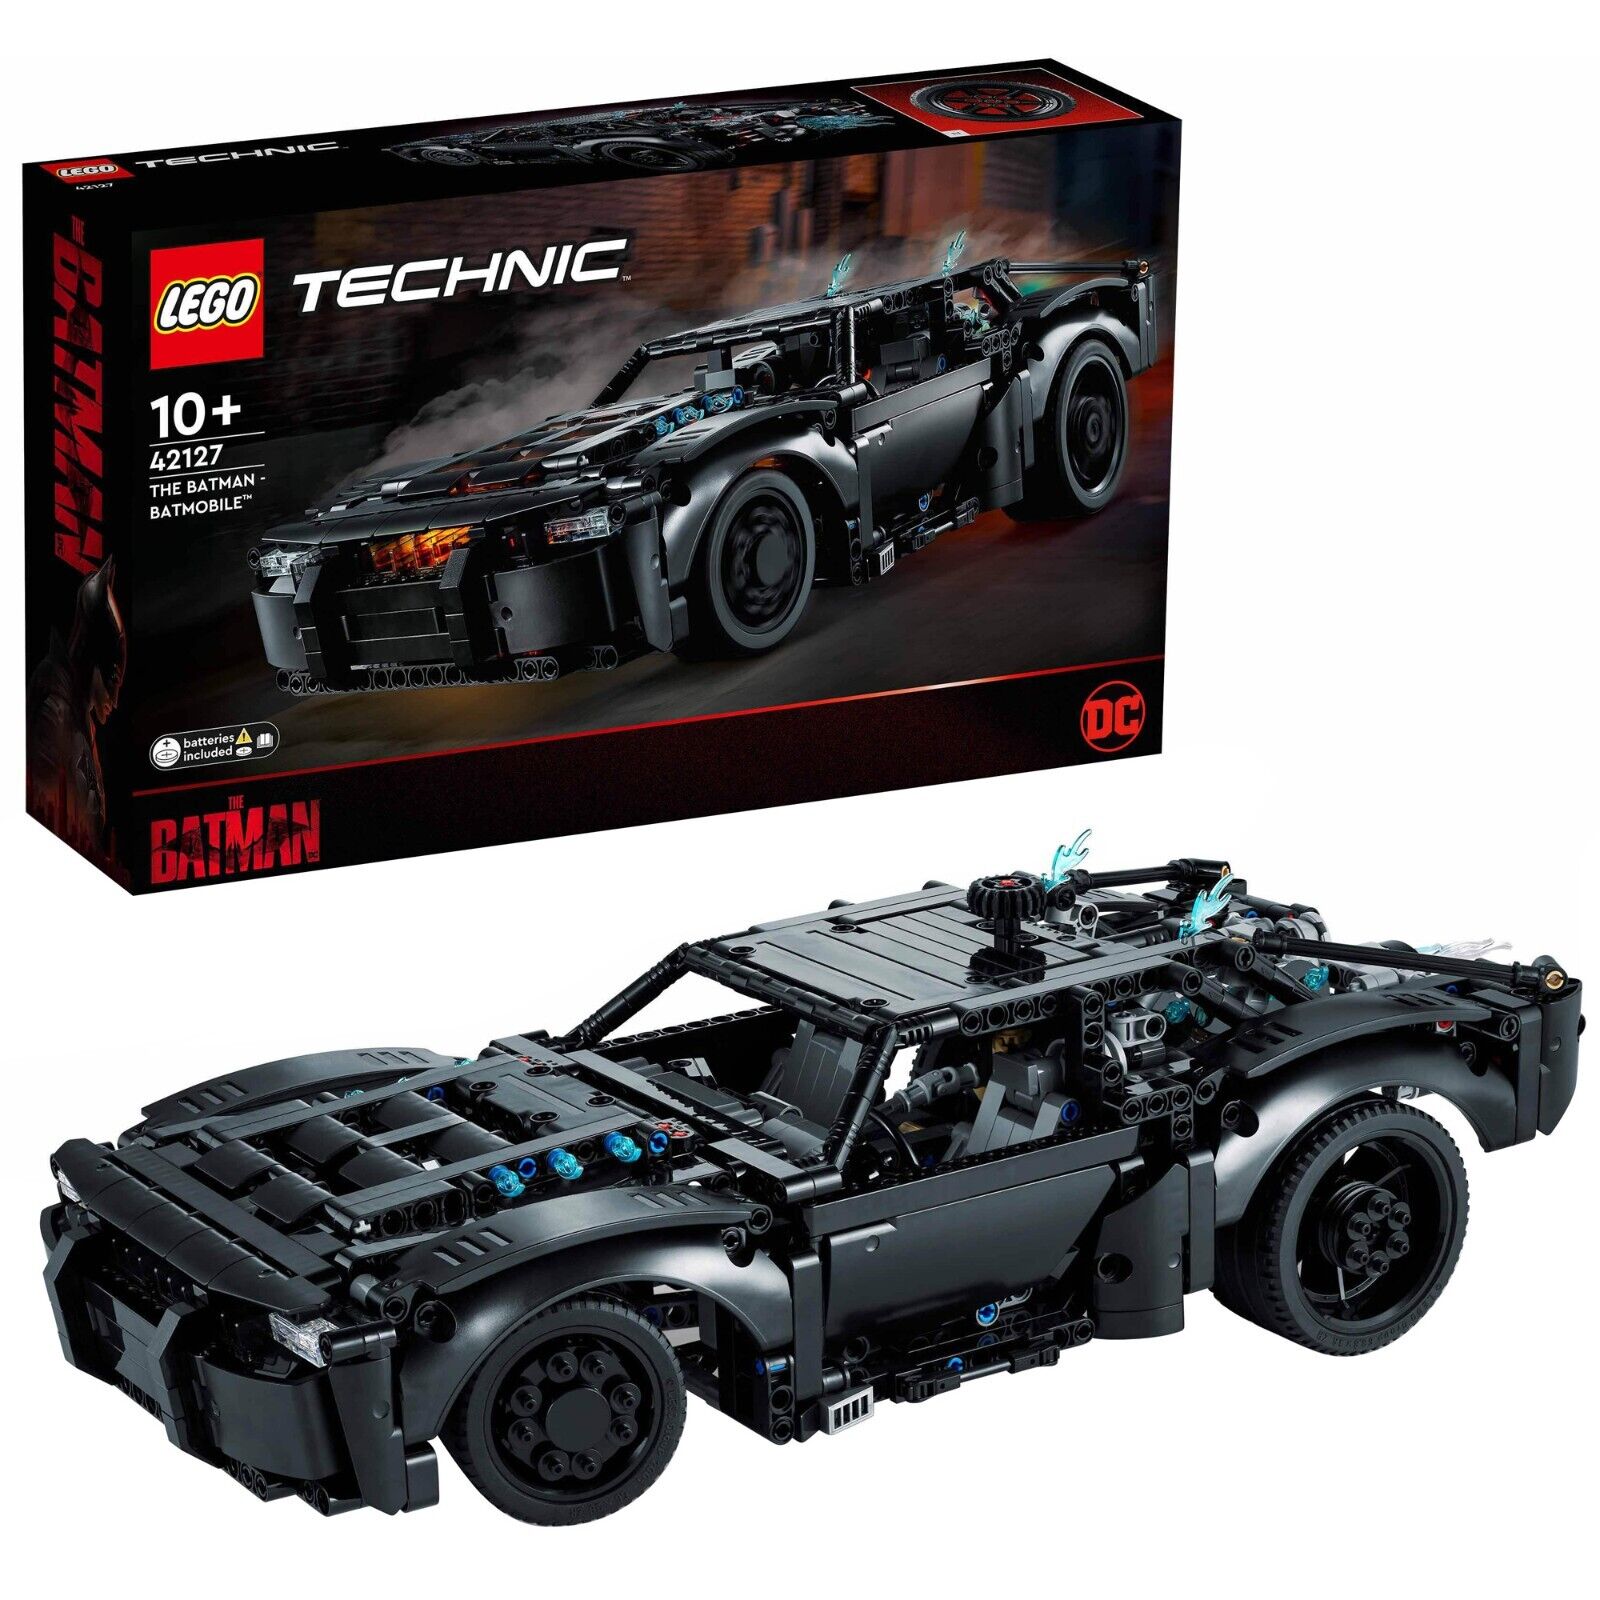 Bild zu Lego Technic Batmans Batmobil (42127) für 59,90€ (Vergleich: 71,99€)